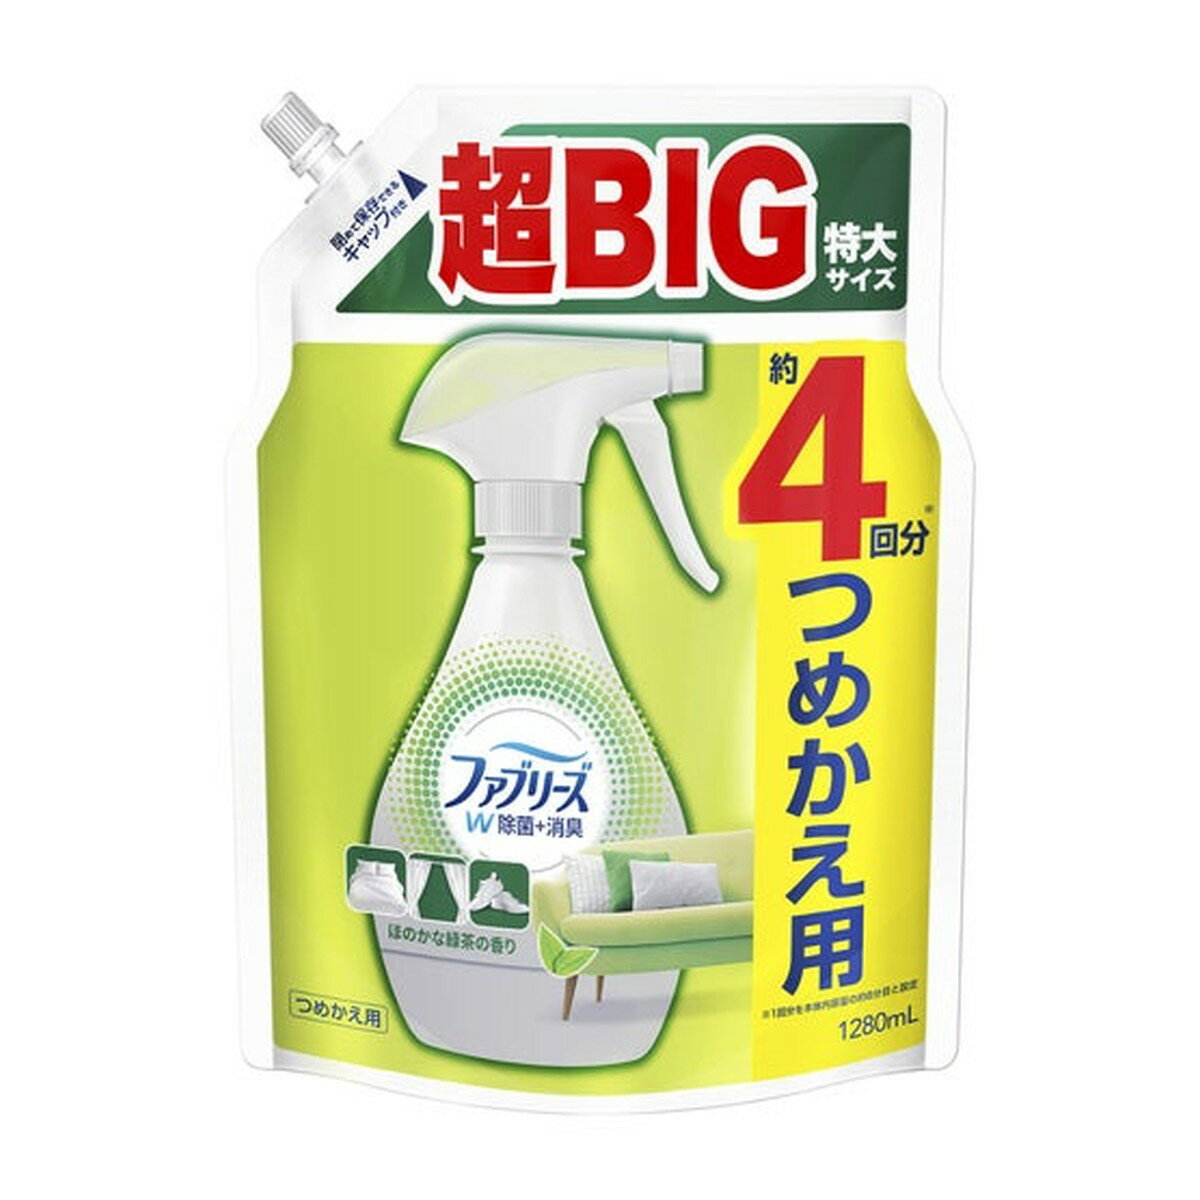 P&G ファブリーズ スプレー W除菌+消臭 布用 ほのかな緑茶の香り つめかえ用 4回分 超BIG特大サイズ 1280mL 布用消臭剤